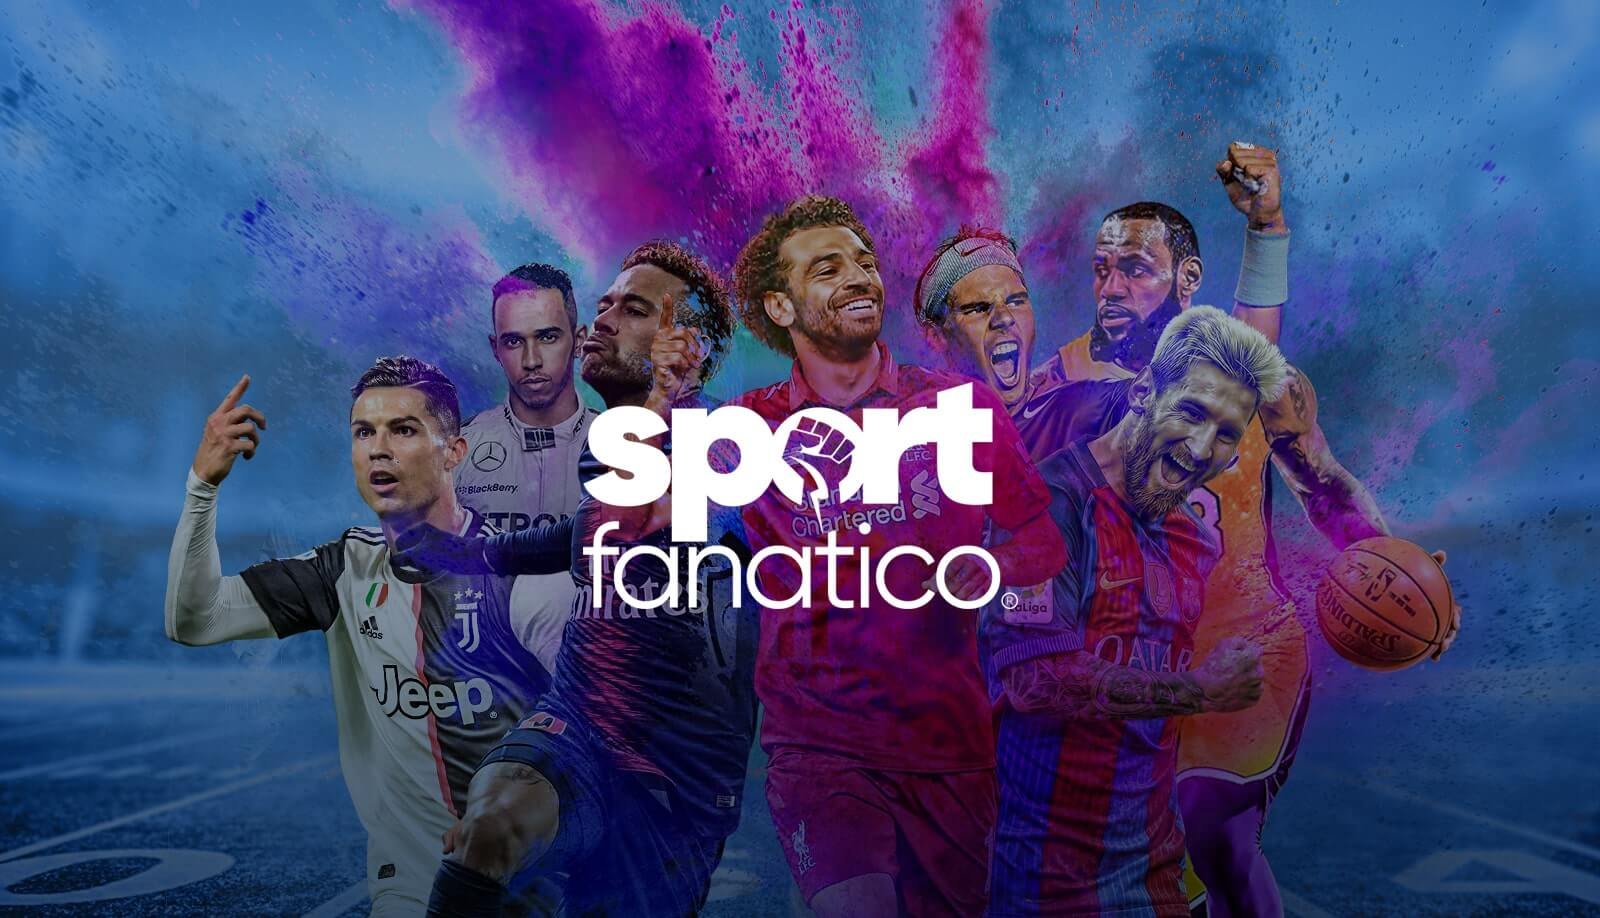 (c) Sport-fanatico.com